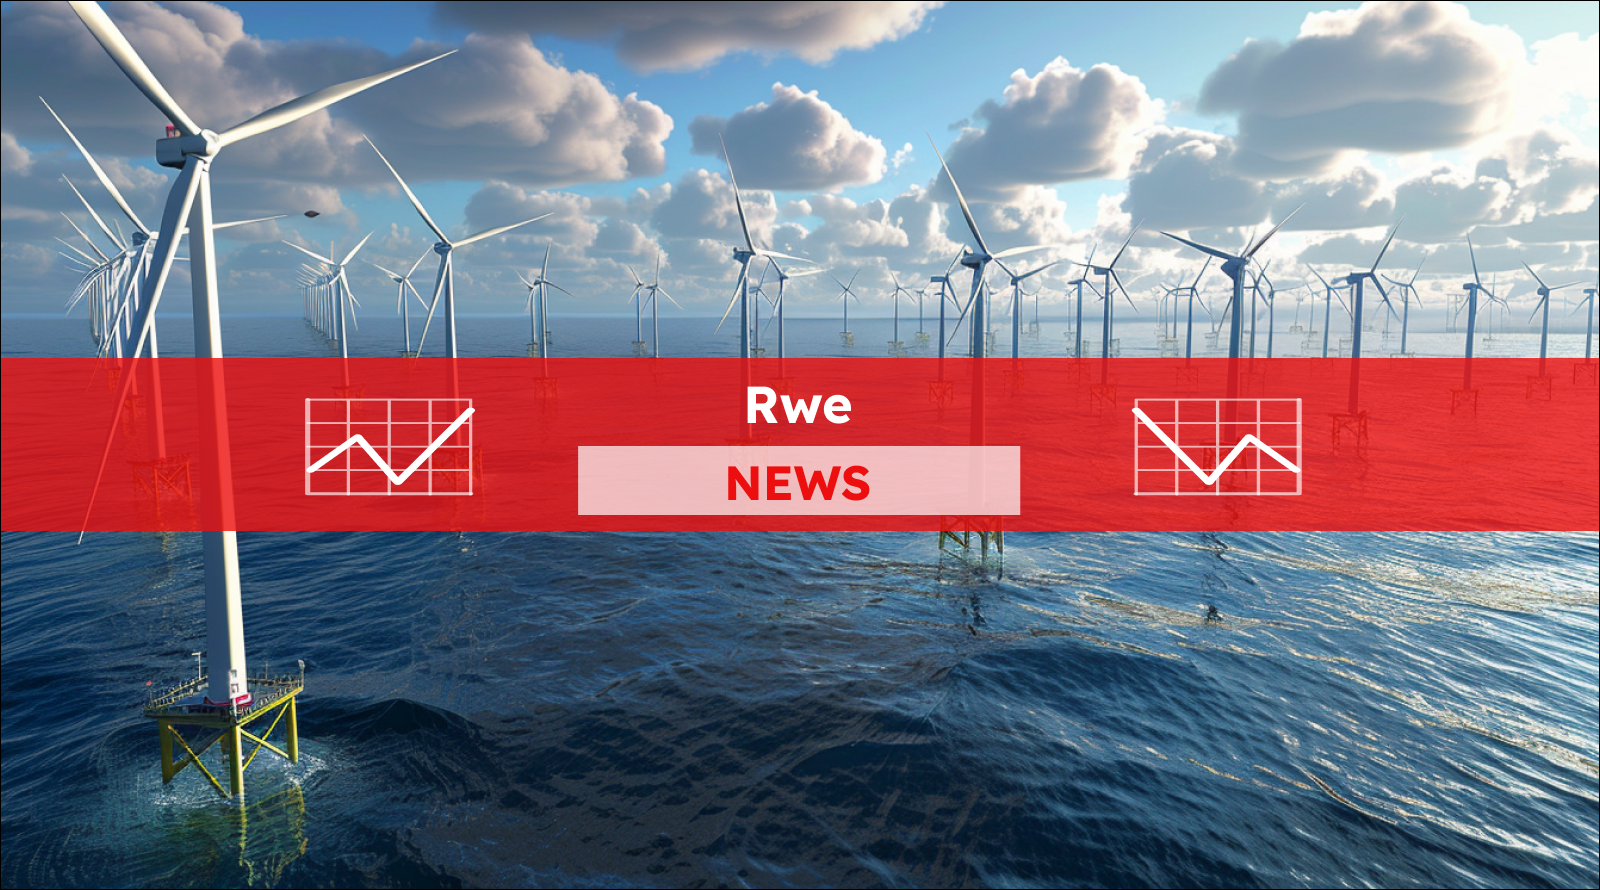 Ein Offshore-Windpark mit zahlreichen Windkraftanlagen im Meer, mit einem Rwe NEWS Banner.